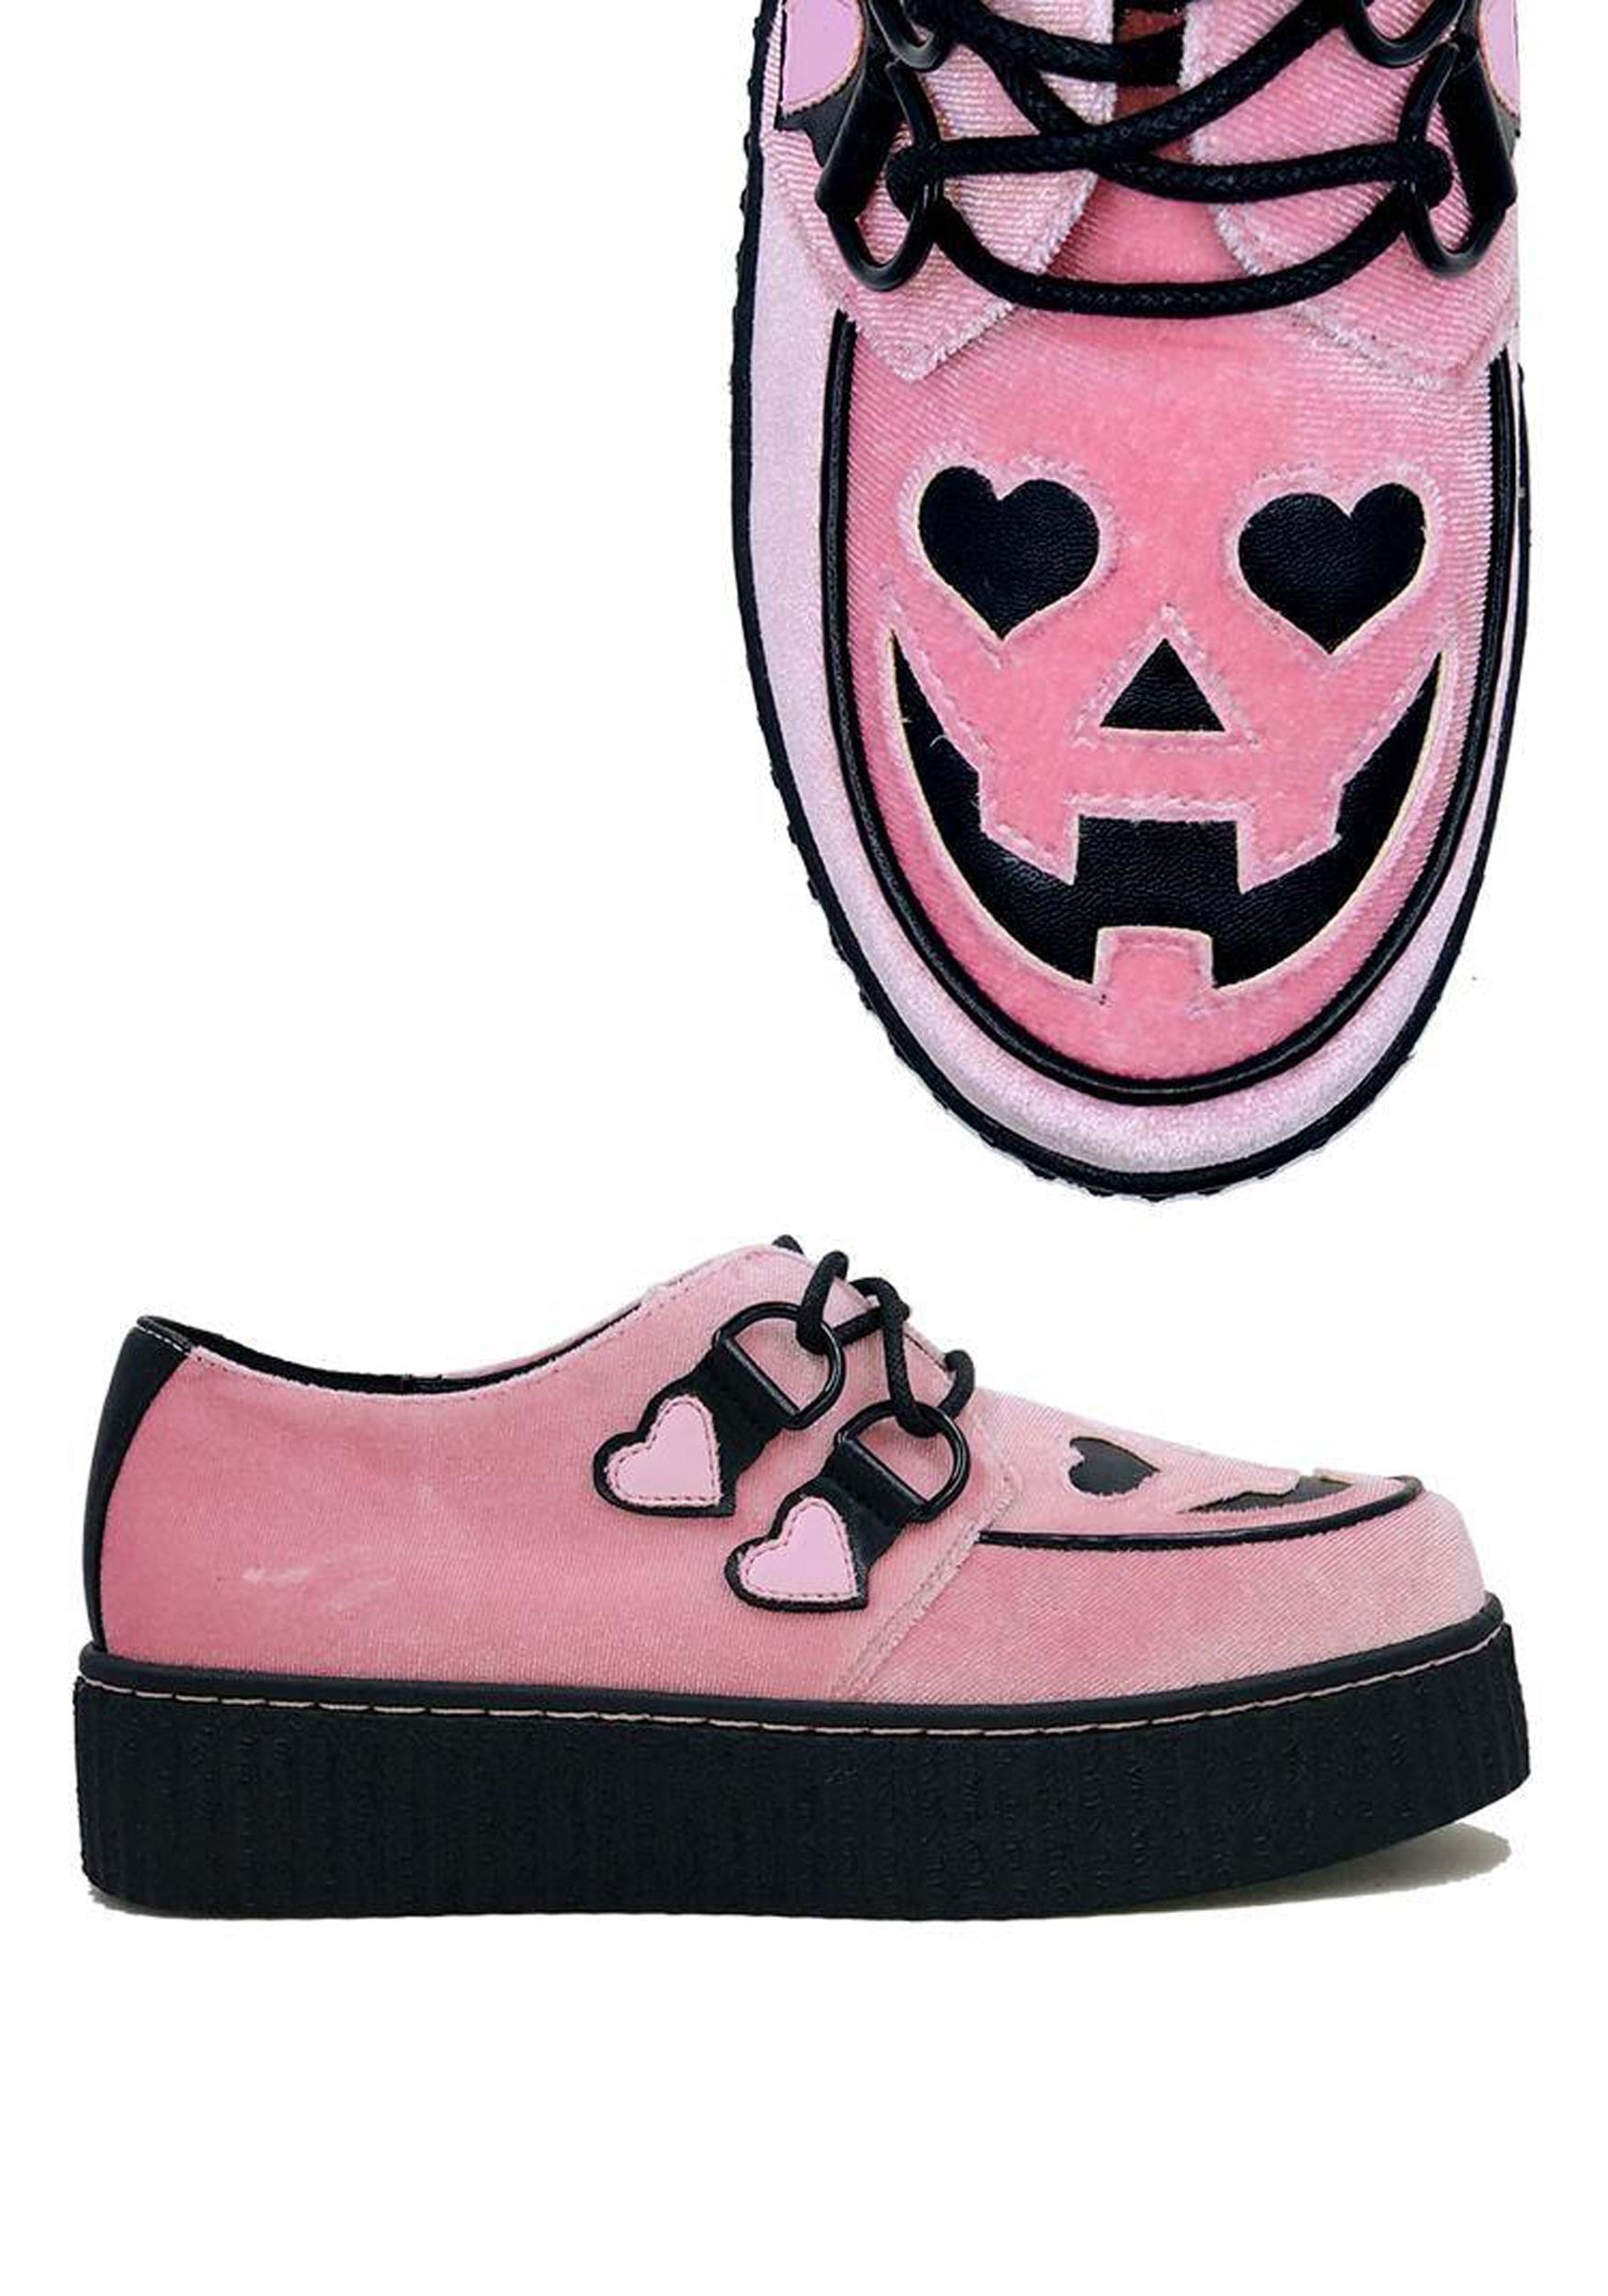 Image of Pink Velvet Jack O' Heart Creeper Shoe for Women ID SVKRYPTJACKHEART-PK-11